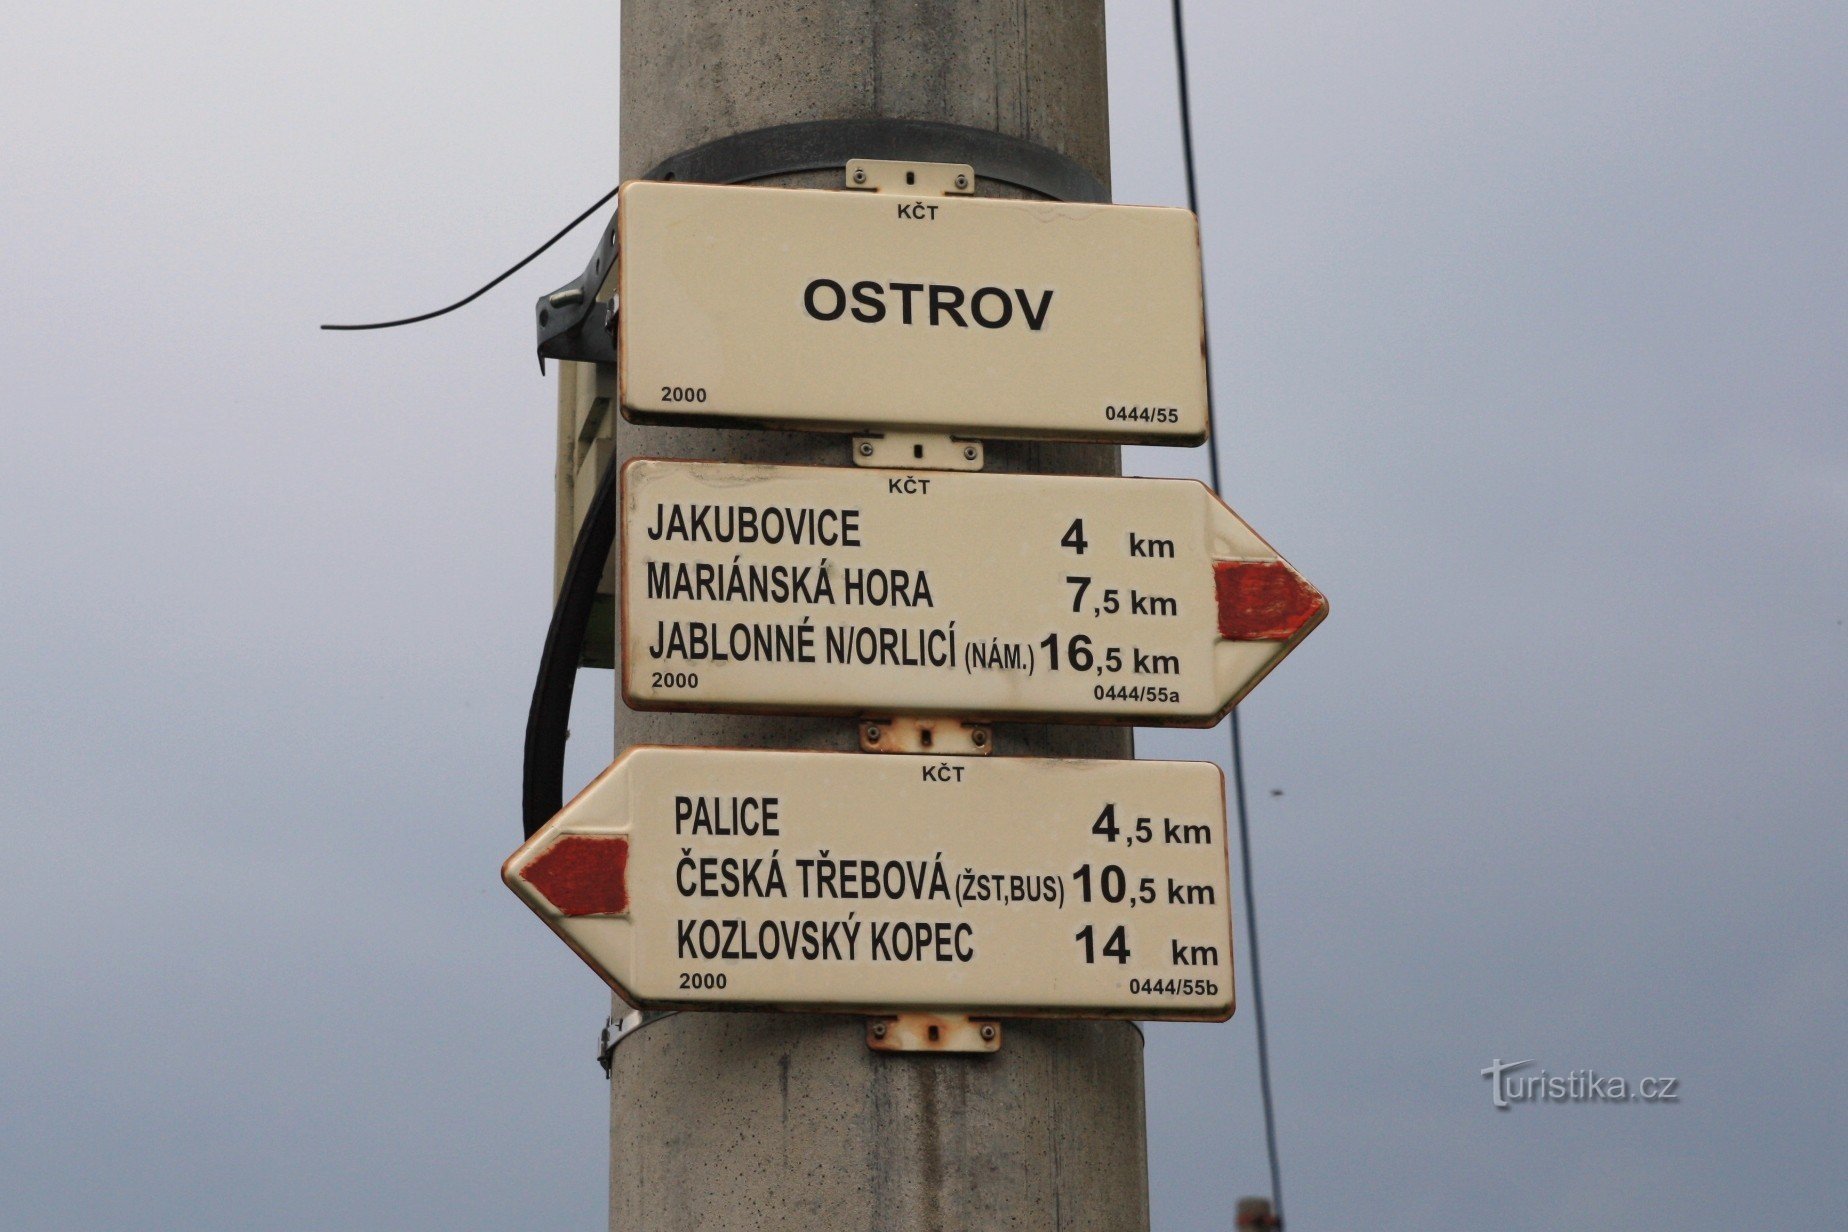 Răscruce turistică Ostrov